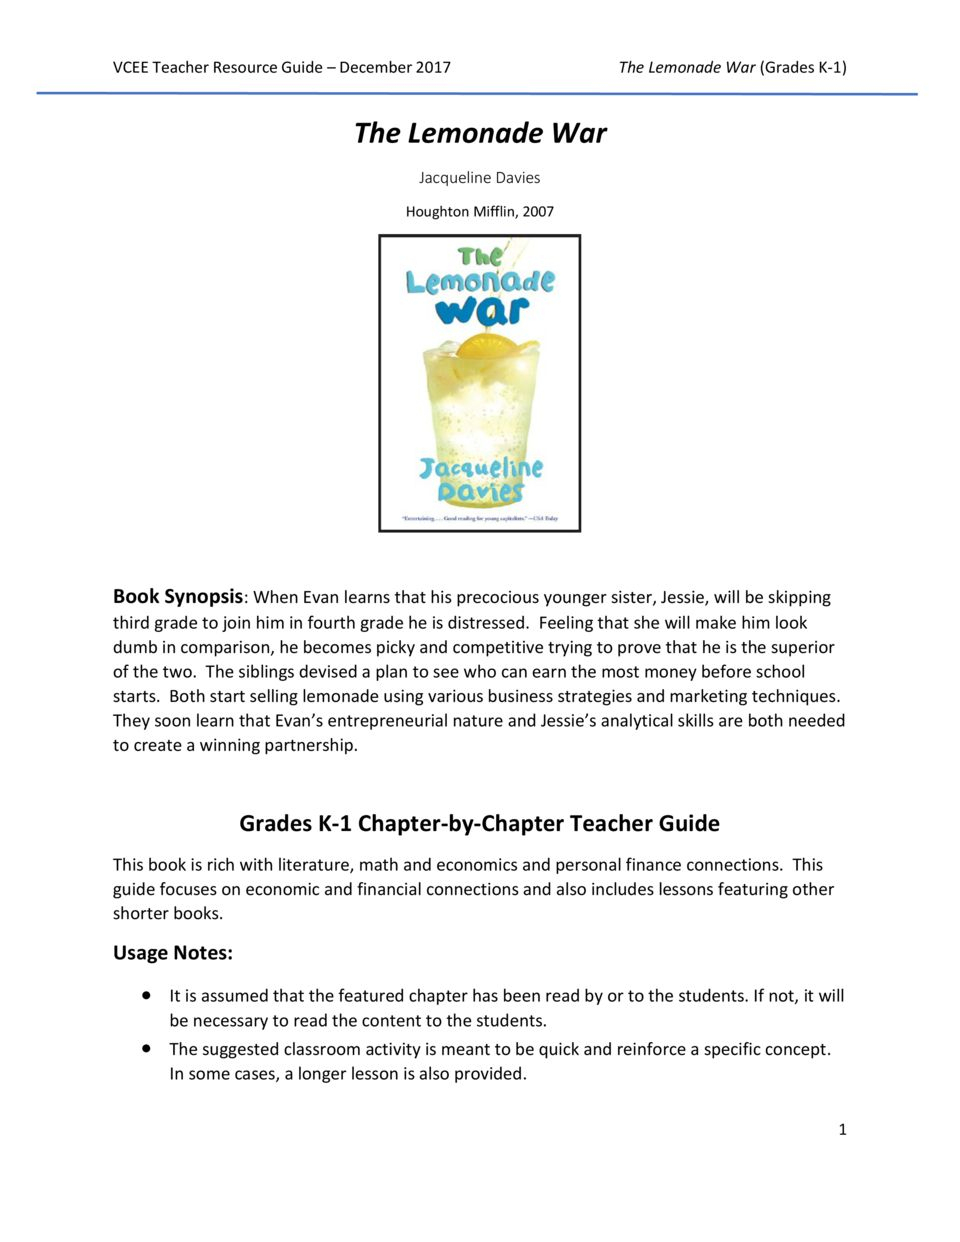 Lemonade War Teacher&amp;#039;s Guide K-1